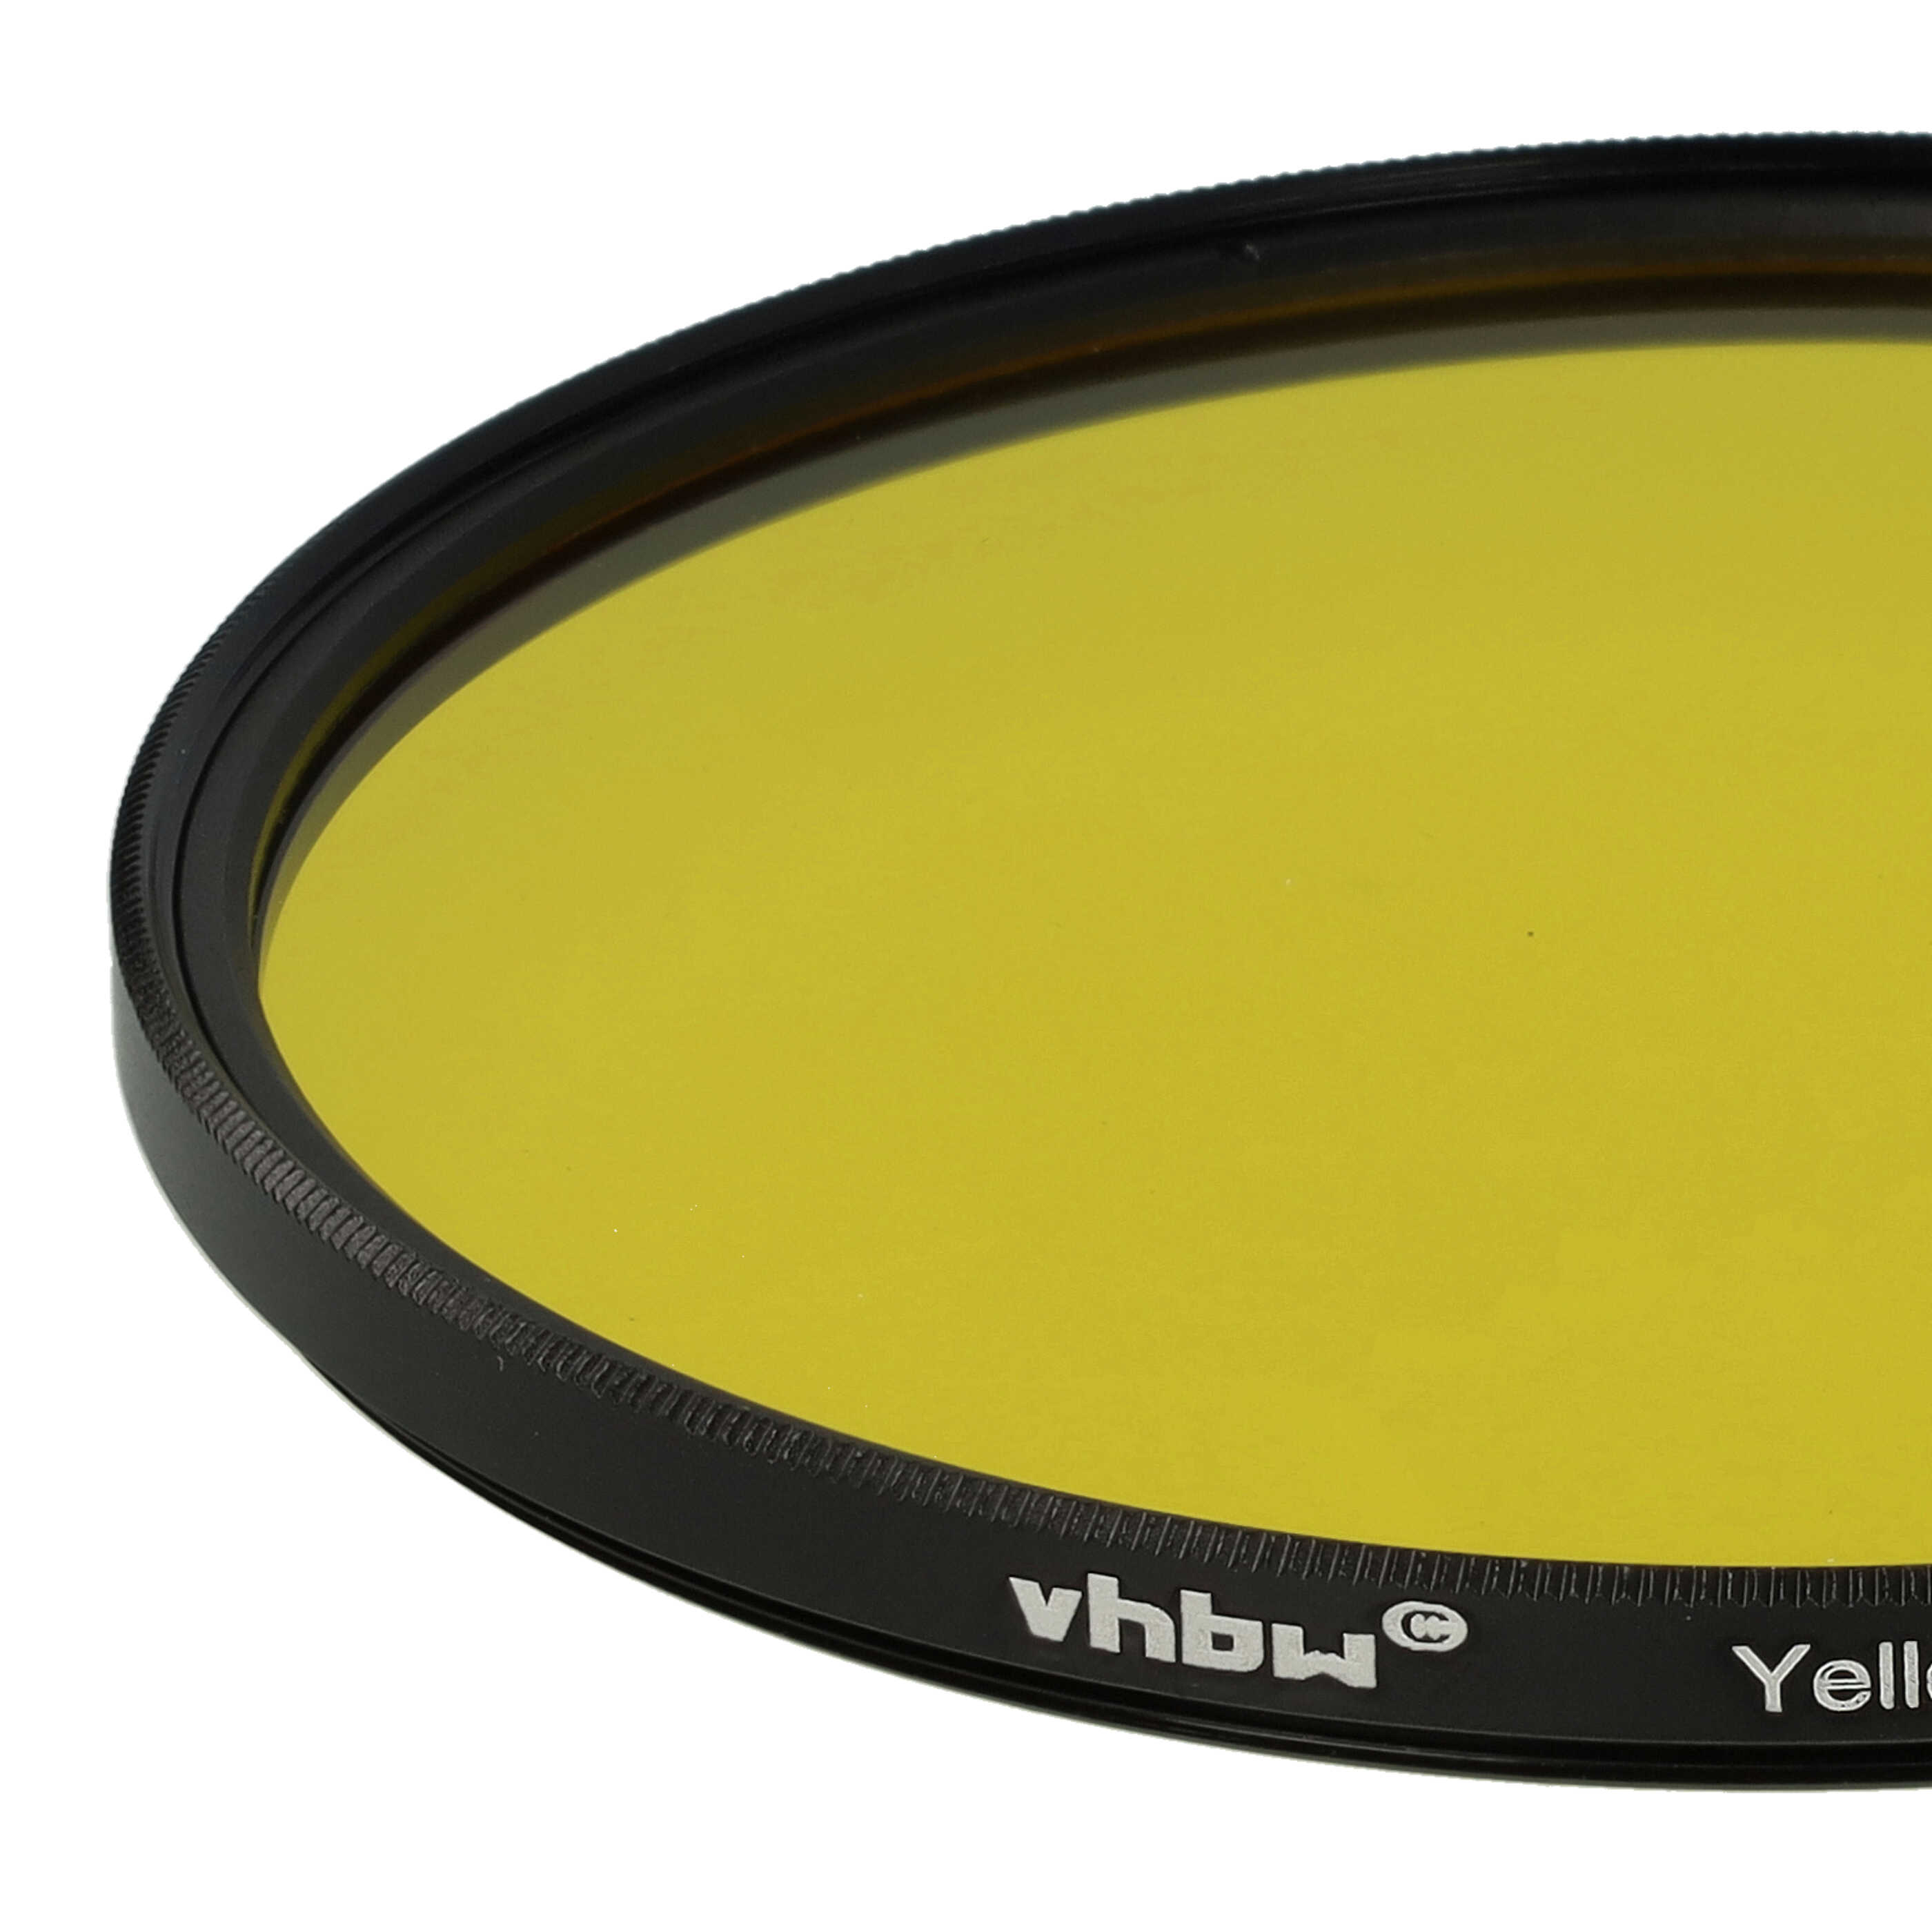 Filtre de couleur jaune pour objectifs d'appareils photo de 82 mm - Filtre jaune